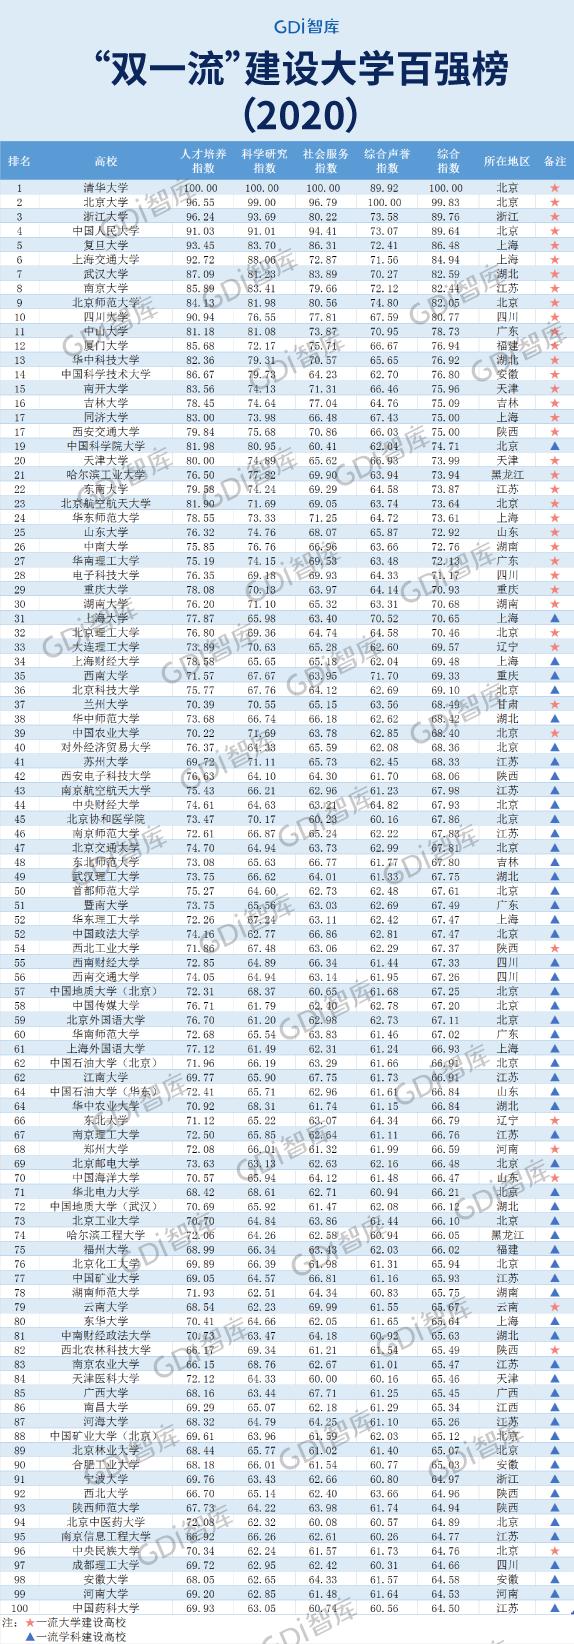 "双一流"建设大学百强榜"发布,重庆仅有这两所大学上榜!